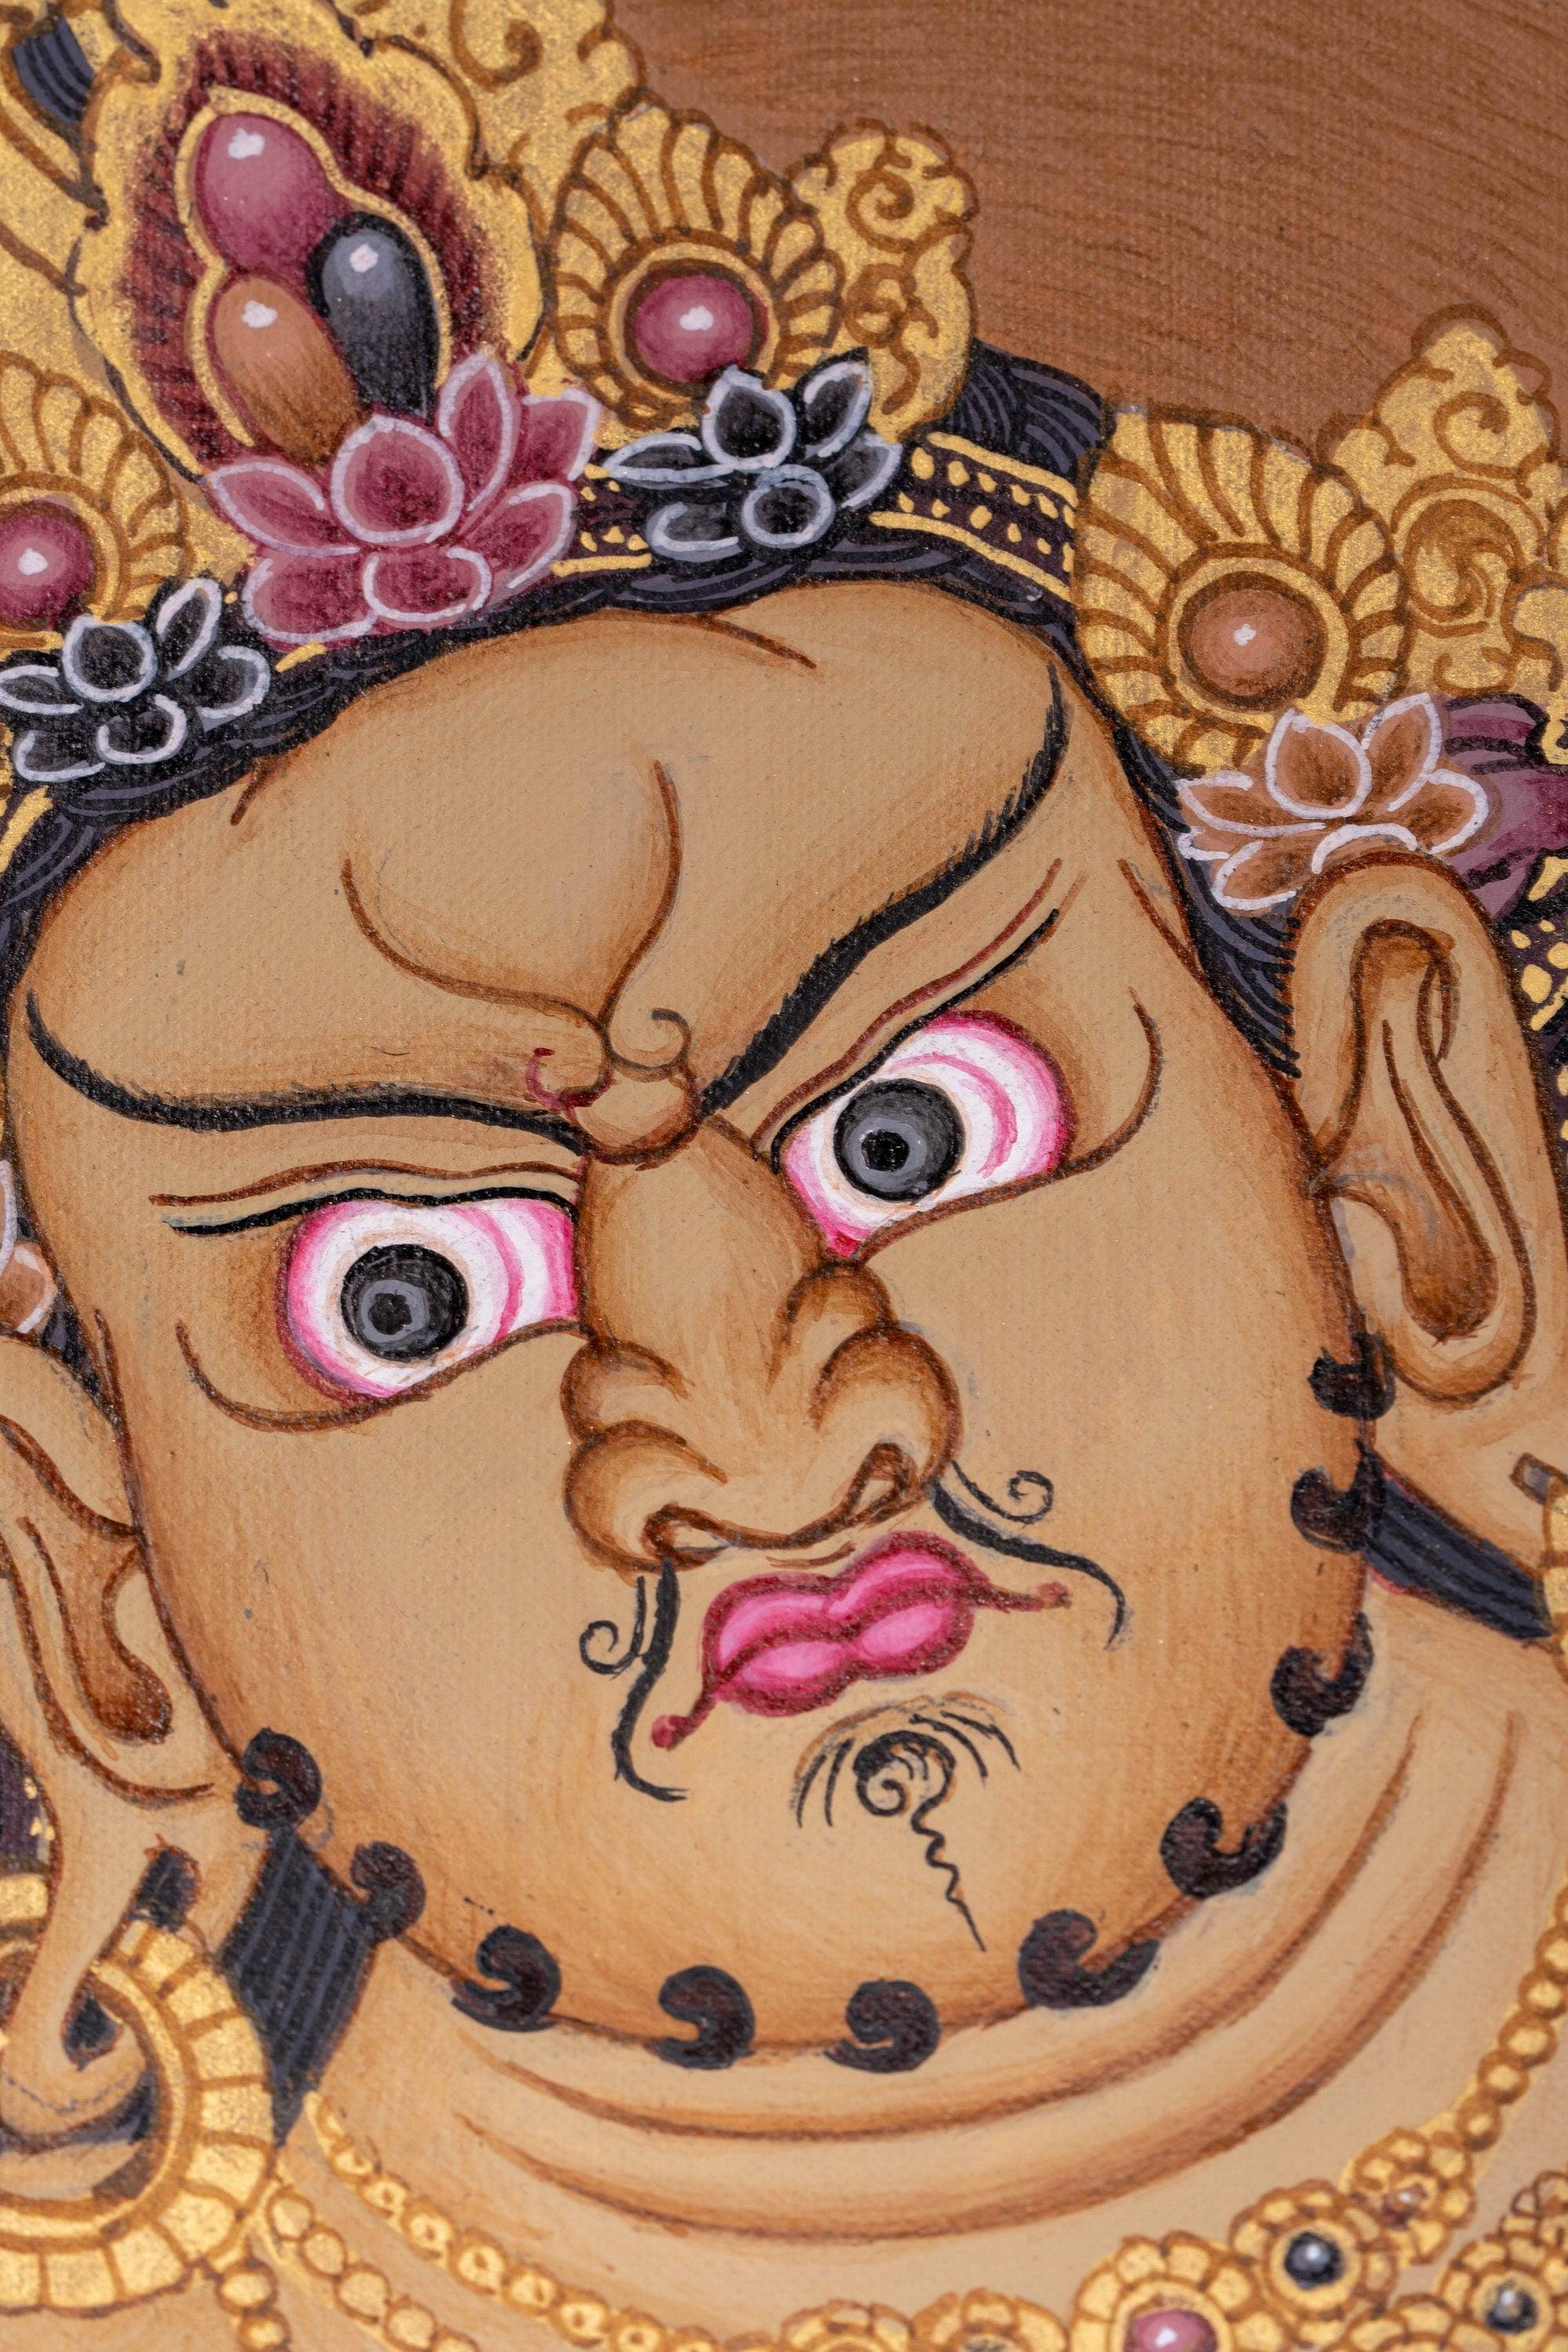 Zambala Thangka Canvas Art - Himalayas Shop